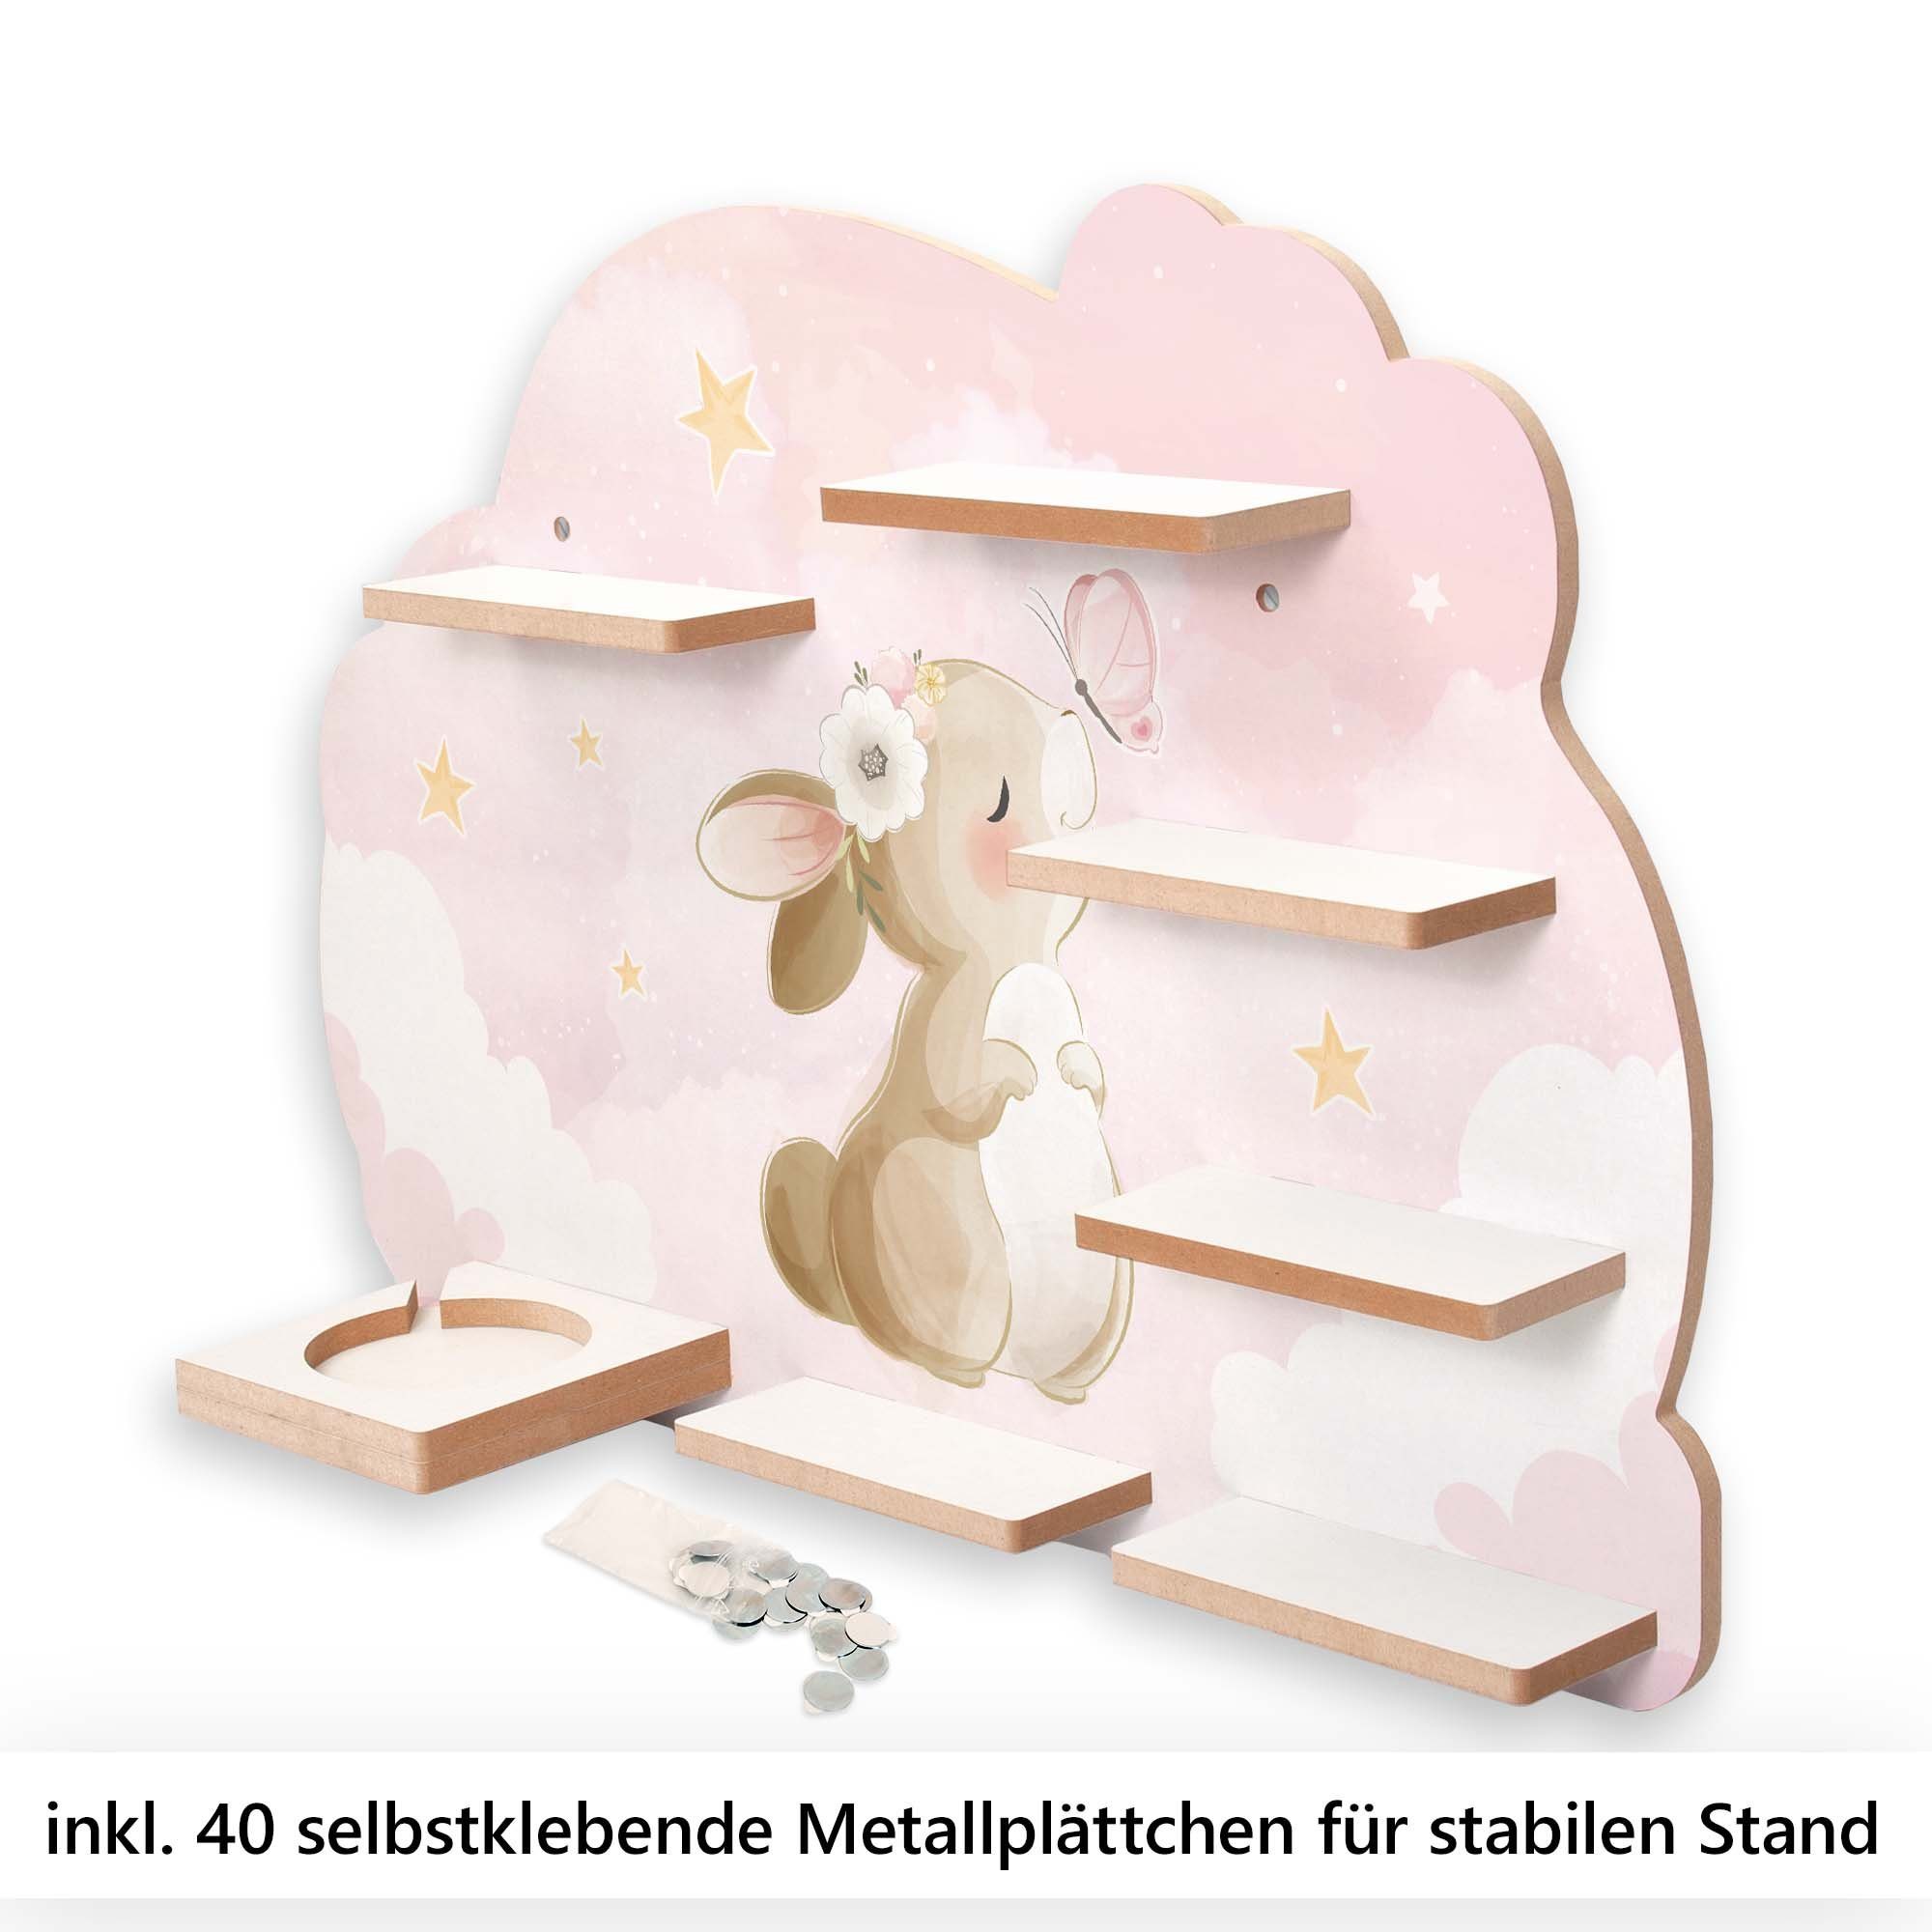 MUSIKBOX-REGAL für Kreative und Feder TONIE-BOX Metallplättchen Wandregal Schmetterling, TONIES & inkl. Häschen 40